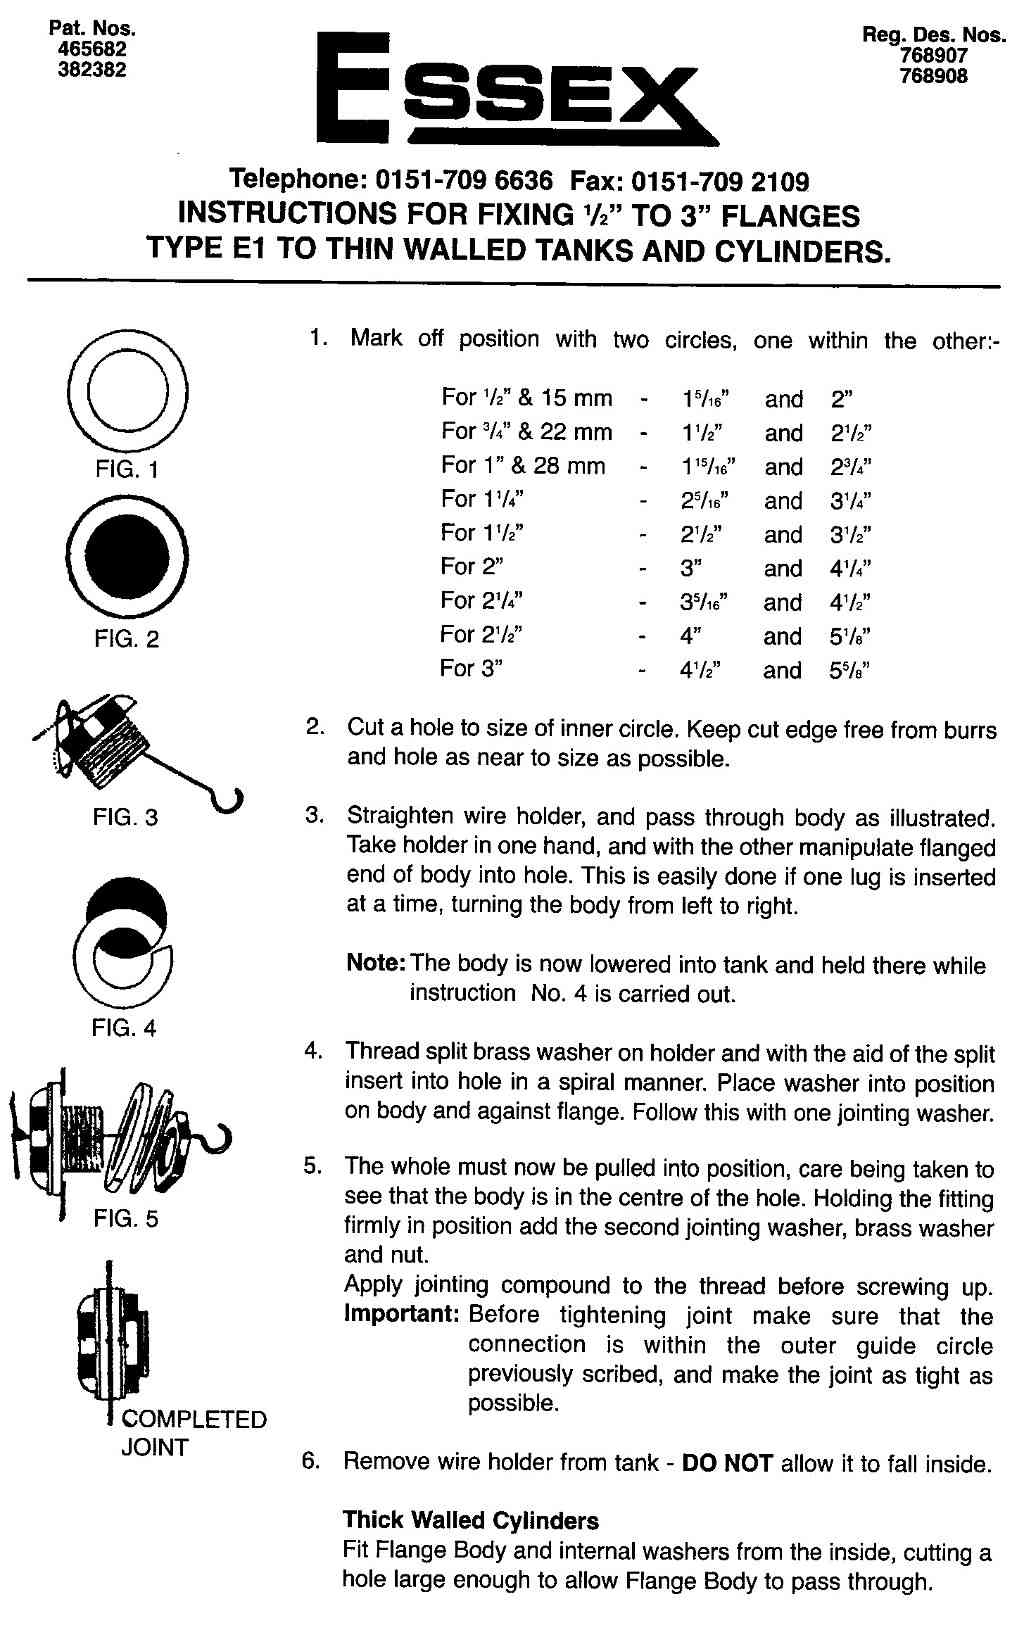 Essex flange installation instructions